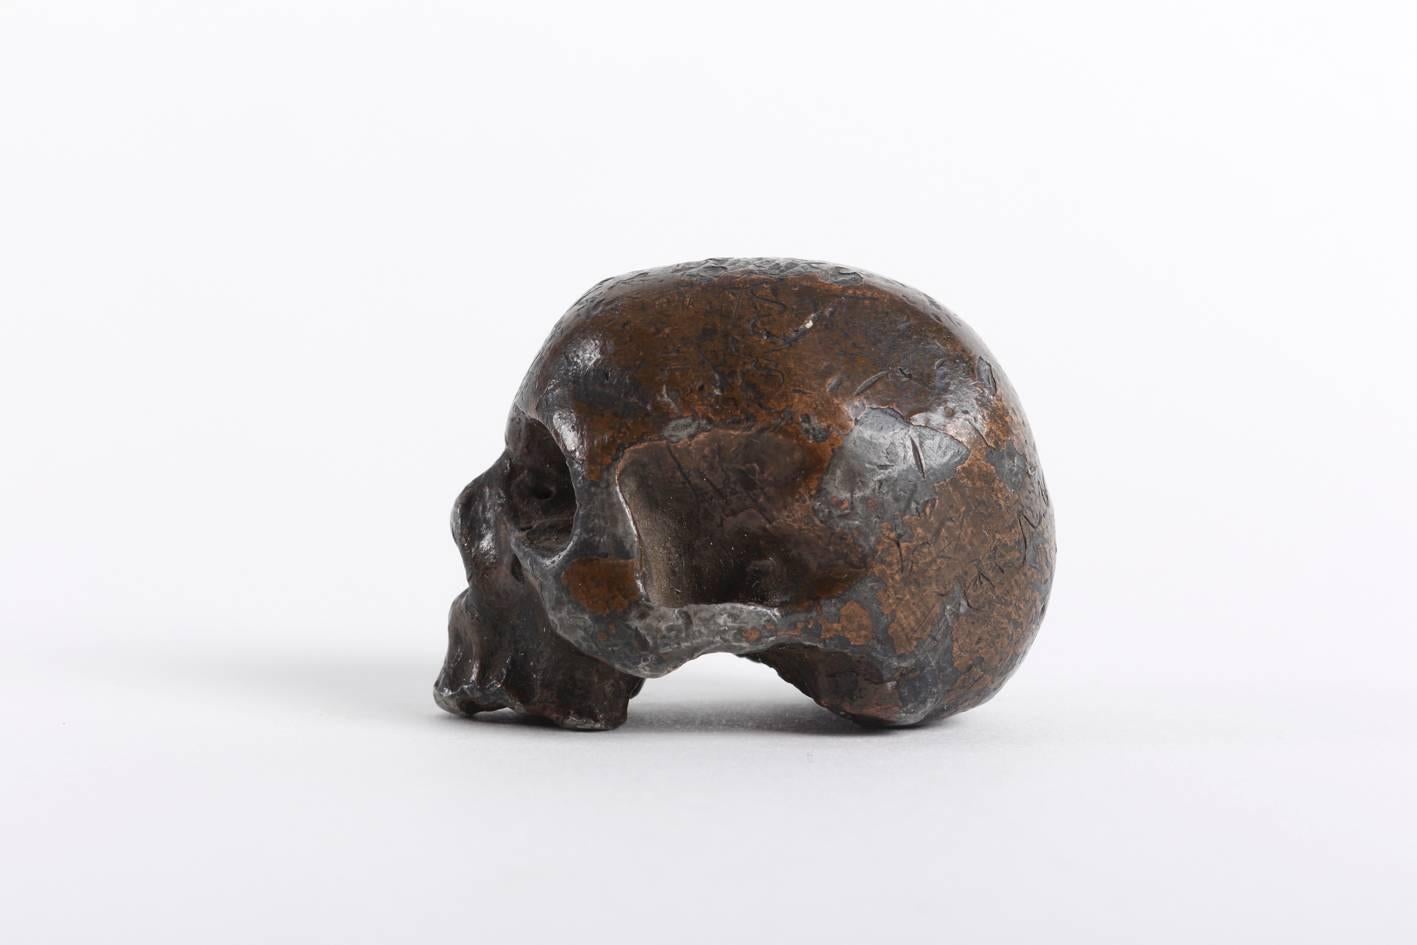 Austrian Rare and Decorative Memento Mori Lead Skull, 18th Century